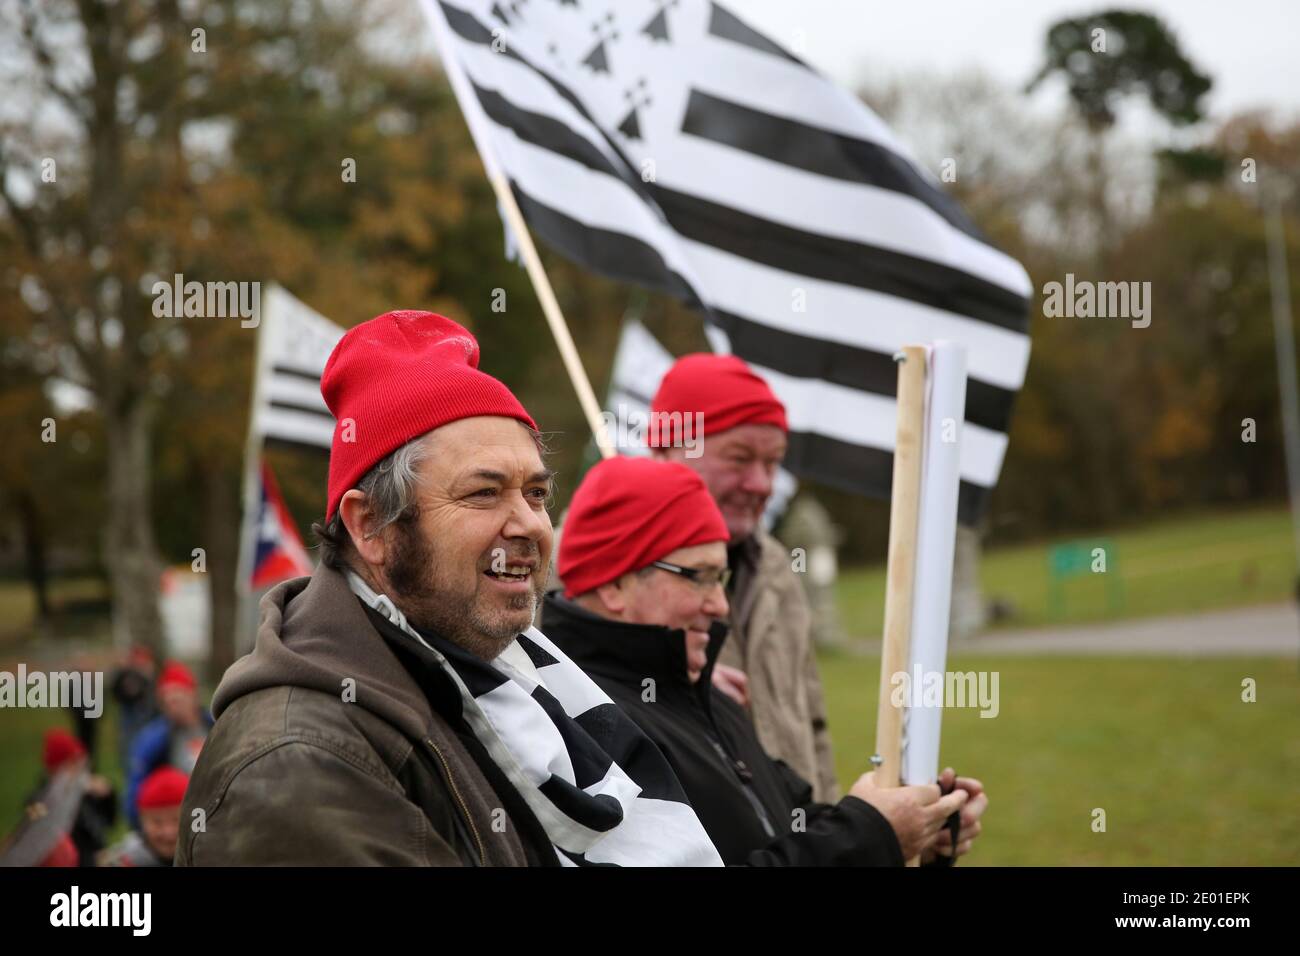 Les manifestants portant des bonnets rouges et portant le drapeau breton  manifestent contre les pertes d'emplois et contre l'écotaxe du  gouvernement, une taxe environnementale controversée sur les poids lourds,  à Carhaix-Plouguer, dans